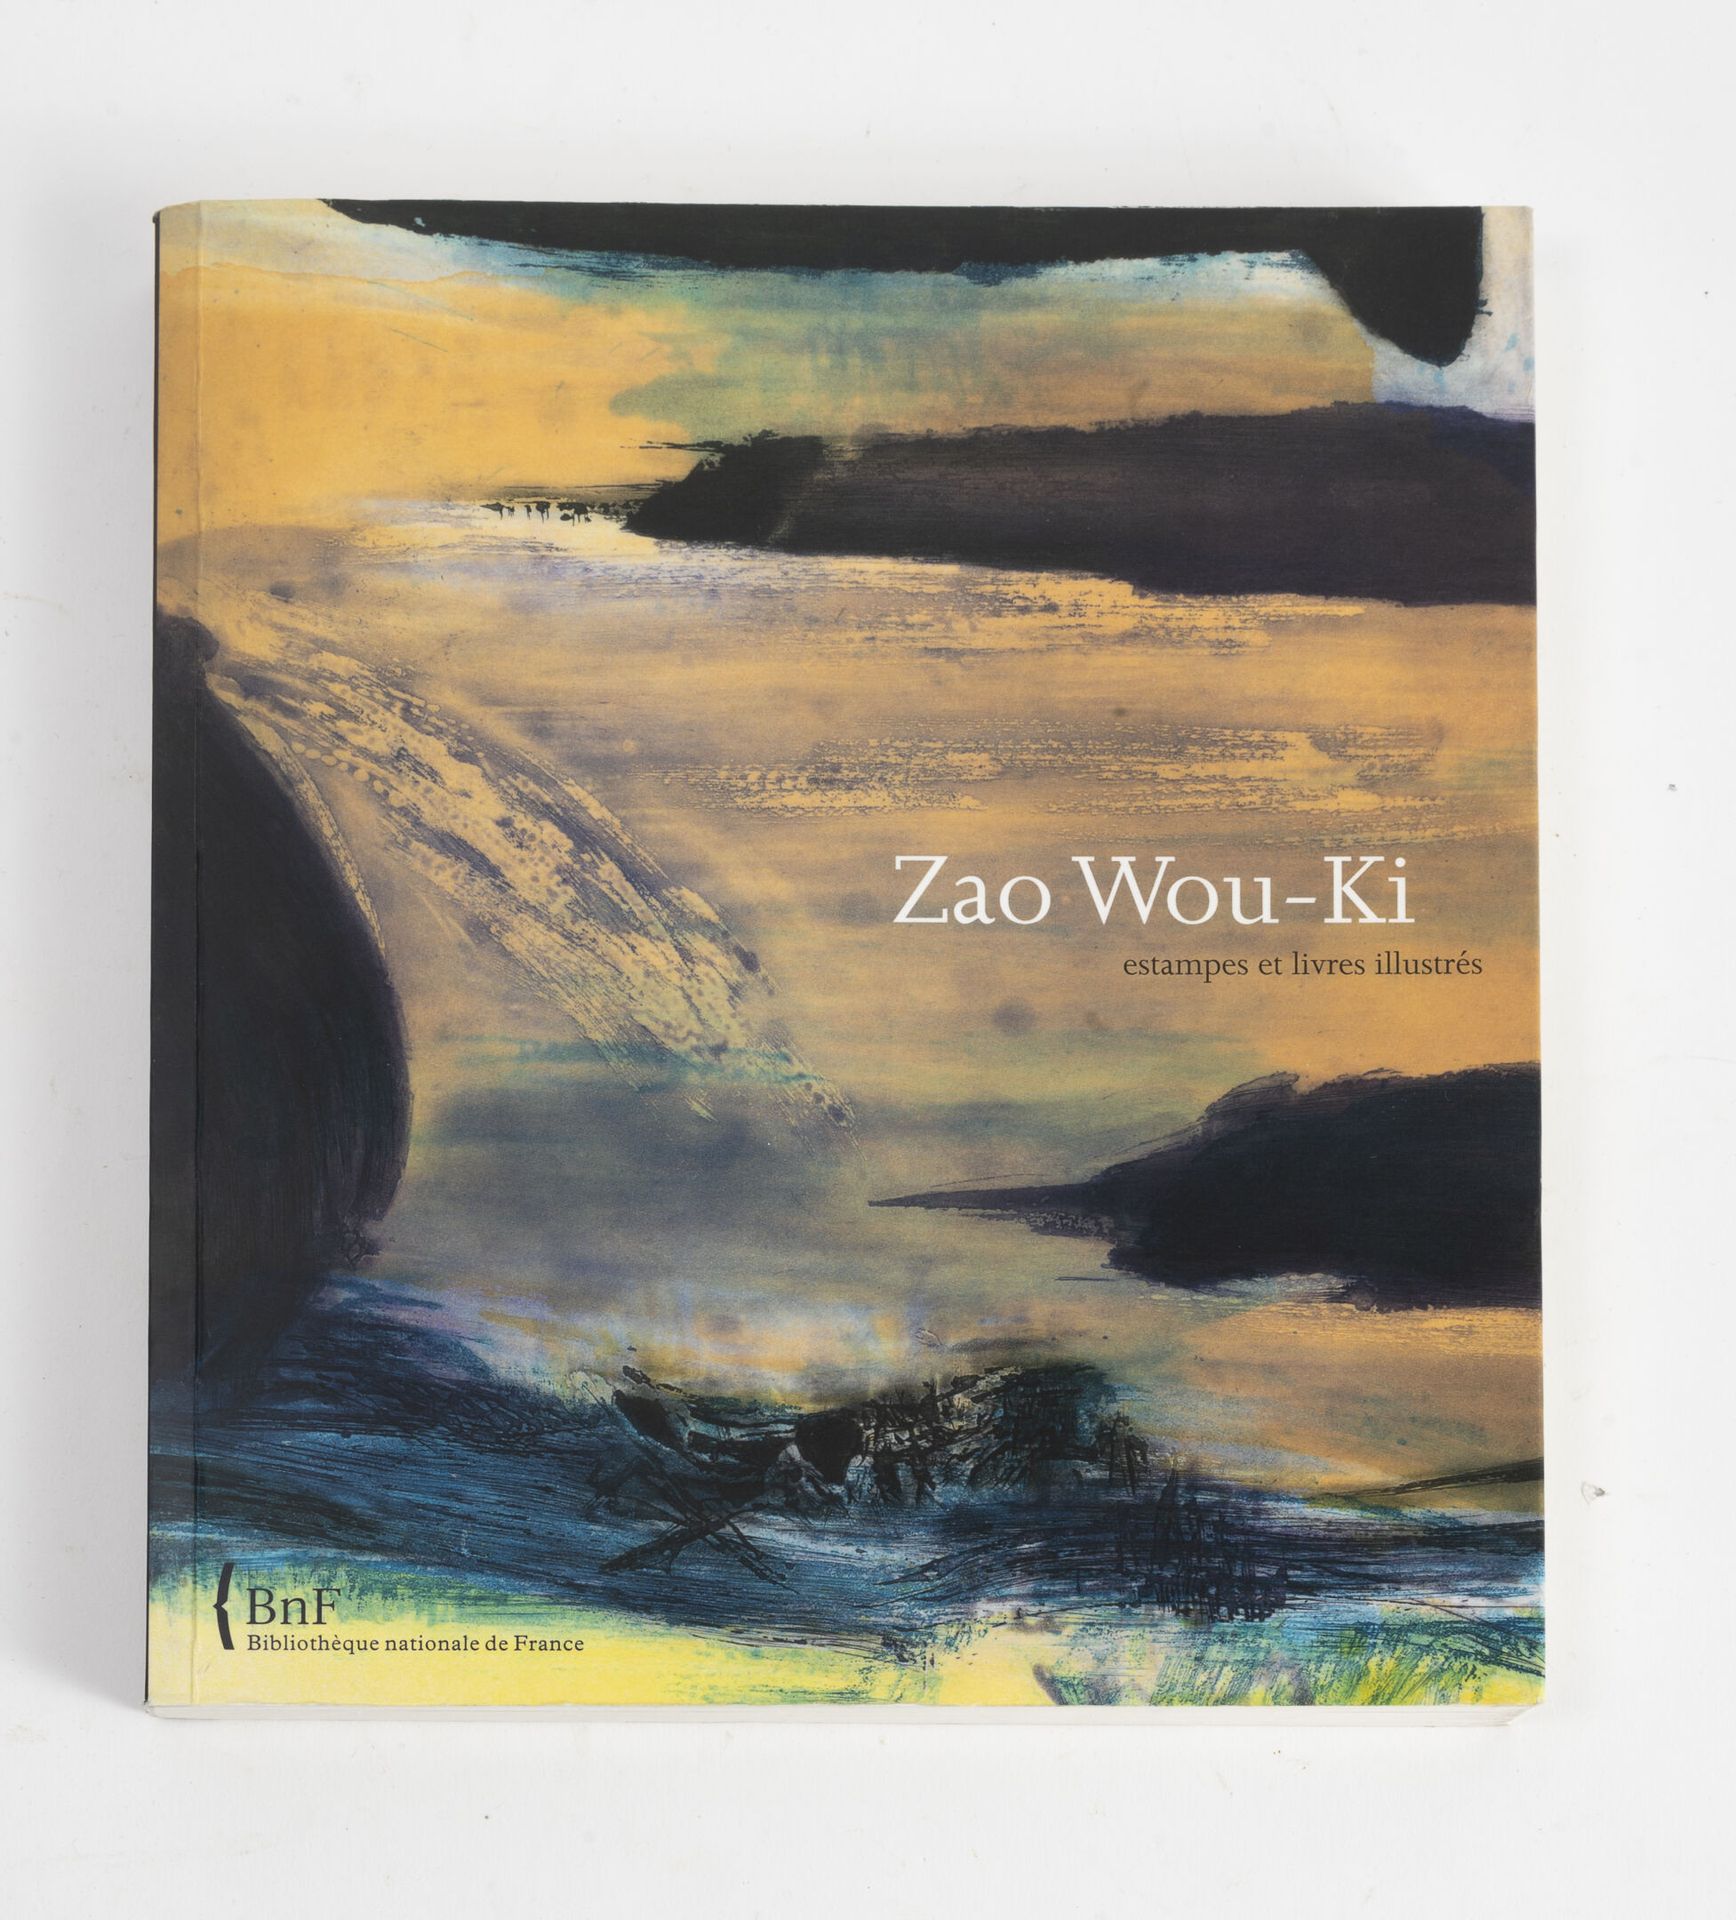 COLLECTIF Zao Wou-ki, estampes et livres illustrés.

Catalogue de l'exposition à&hellip;